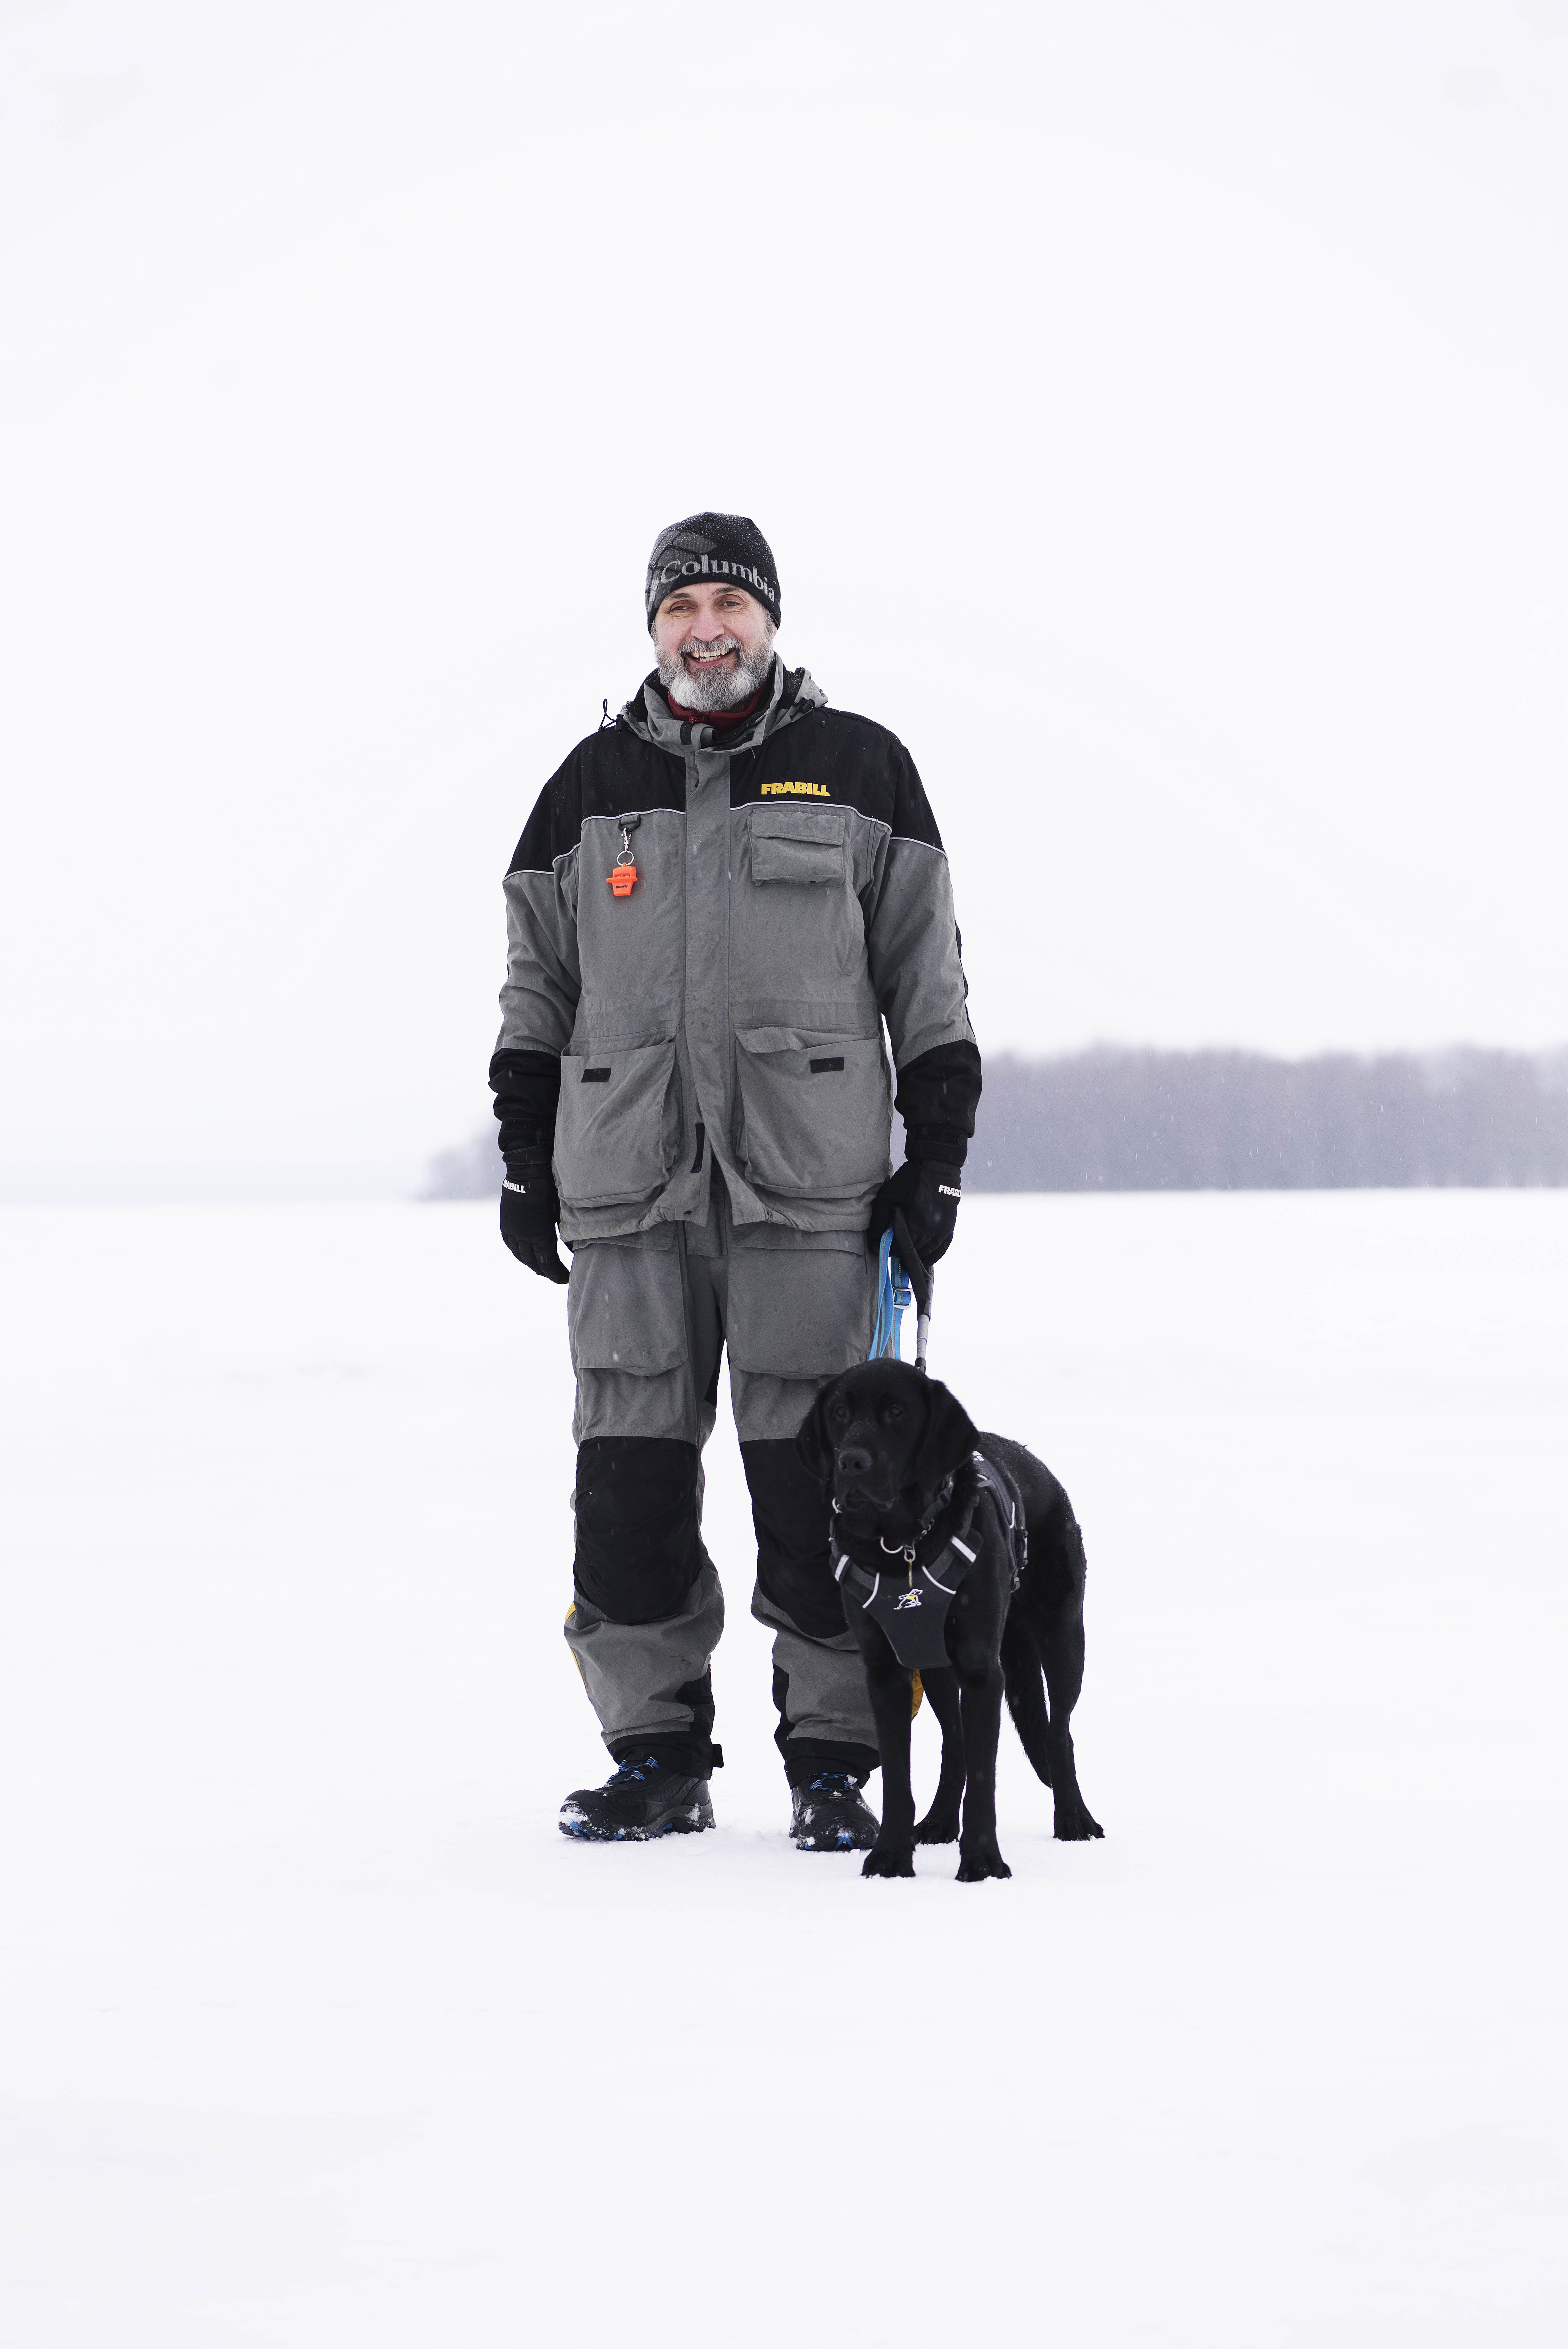 Lawrence et son chien-guide profitent des grands espaces hivernaux. Ils se tiennent ensemble sur un lac gelé recouvert de neige.